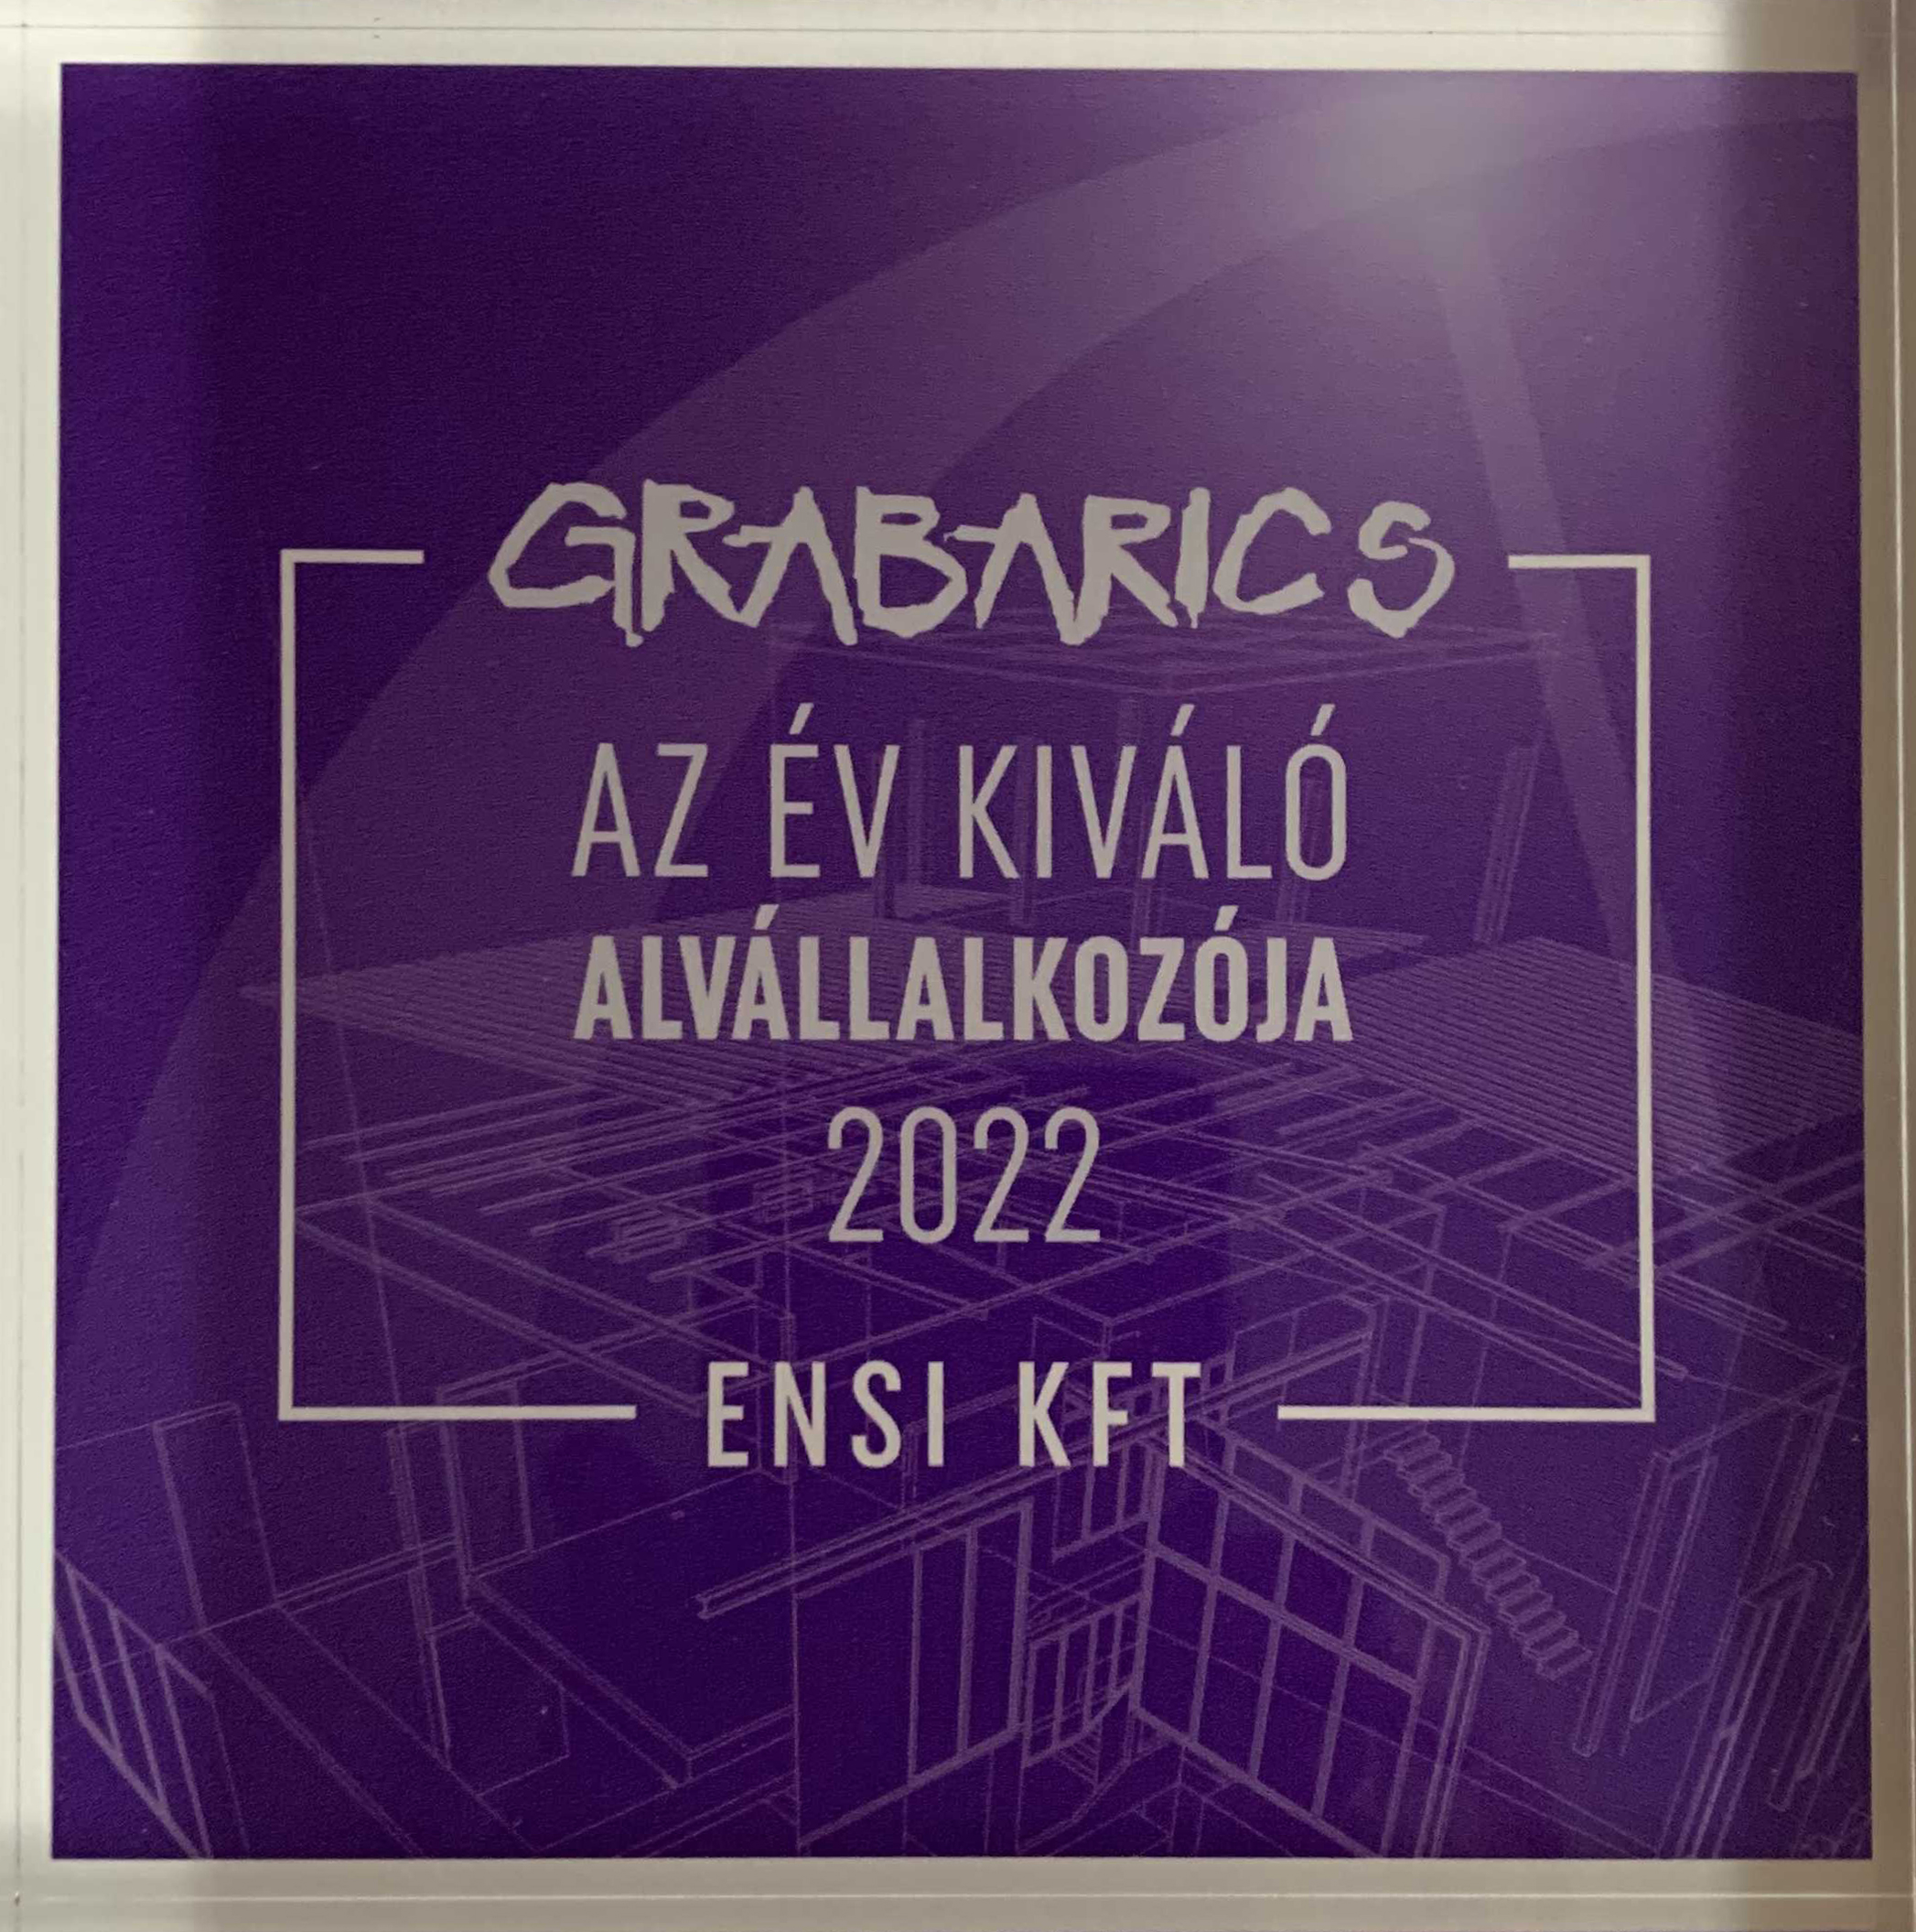 Grabarics kft. elismerése - 2022